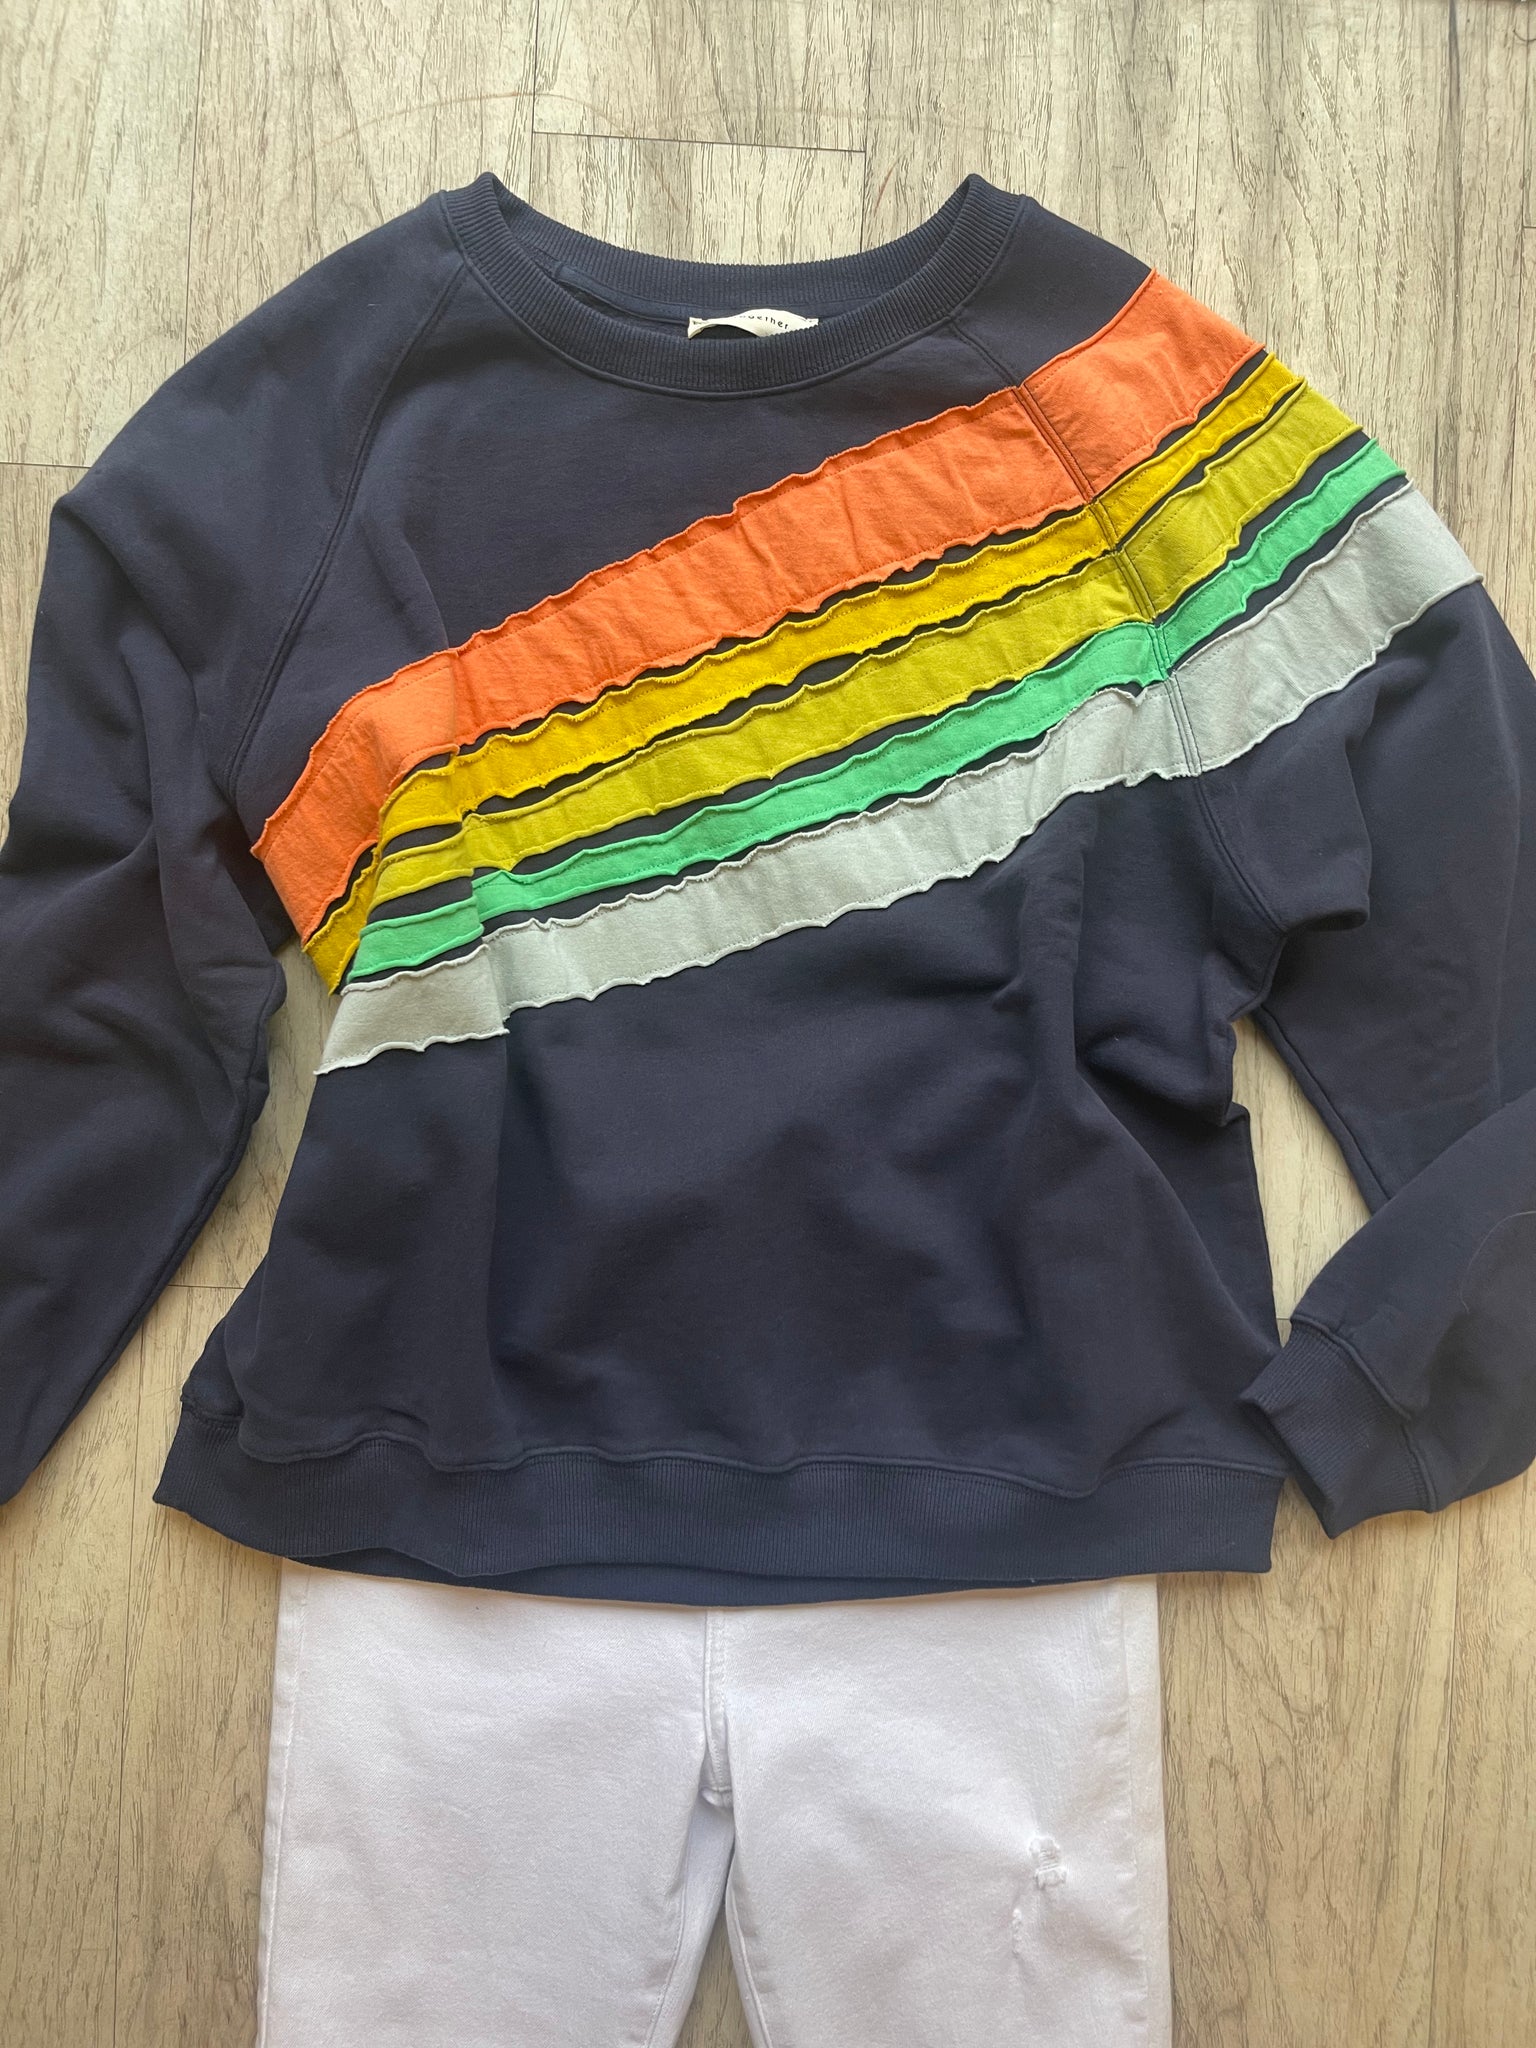 Cross Color Sweatshirt